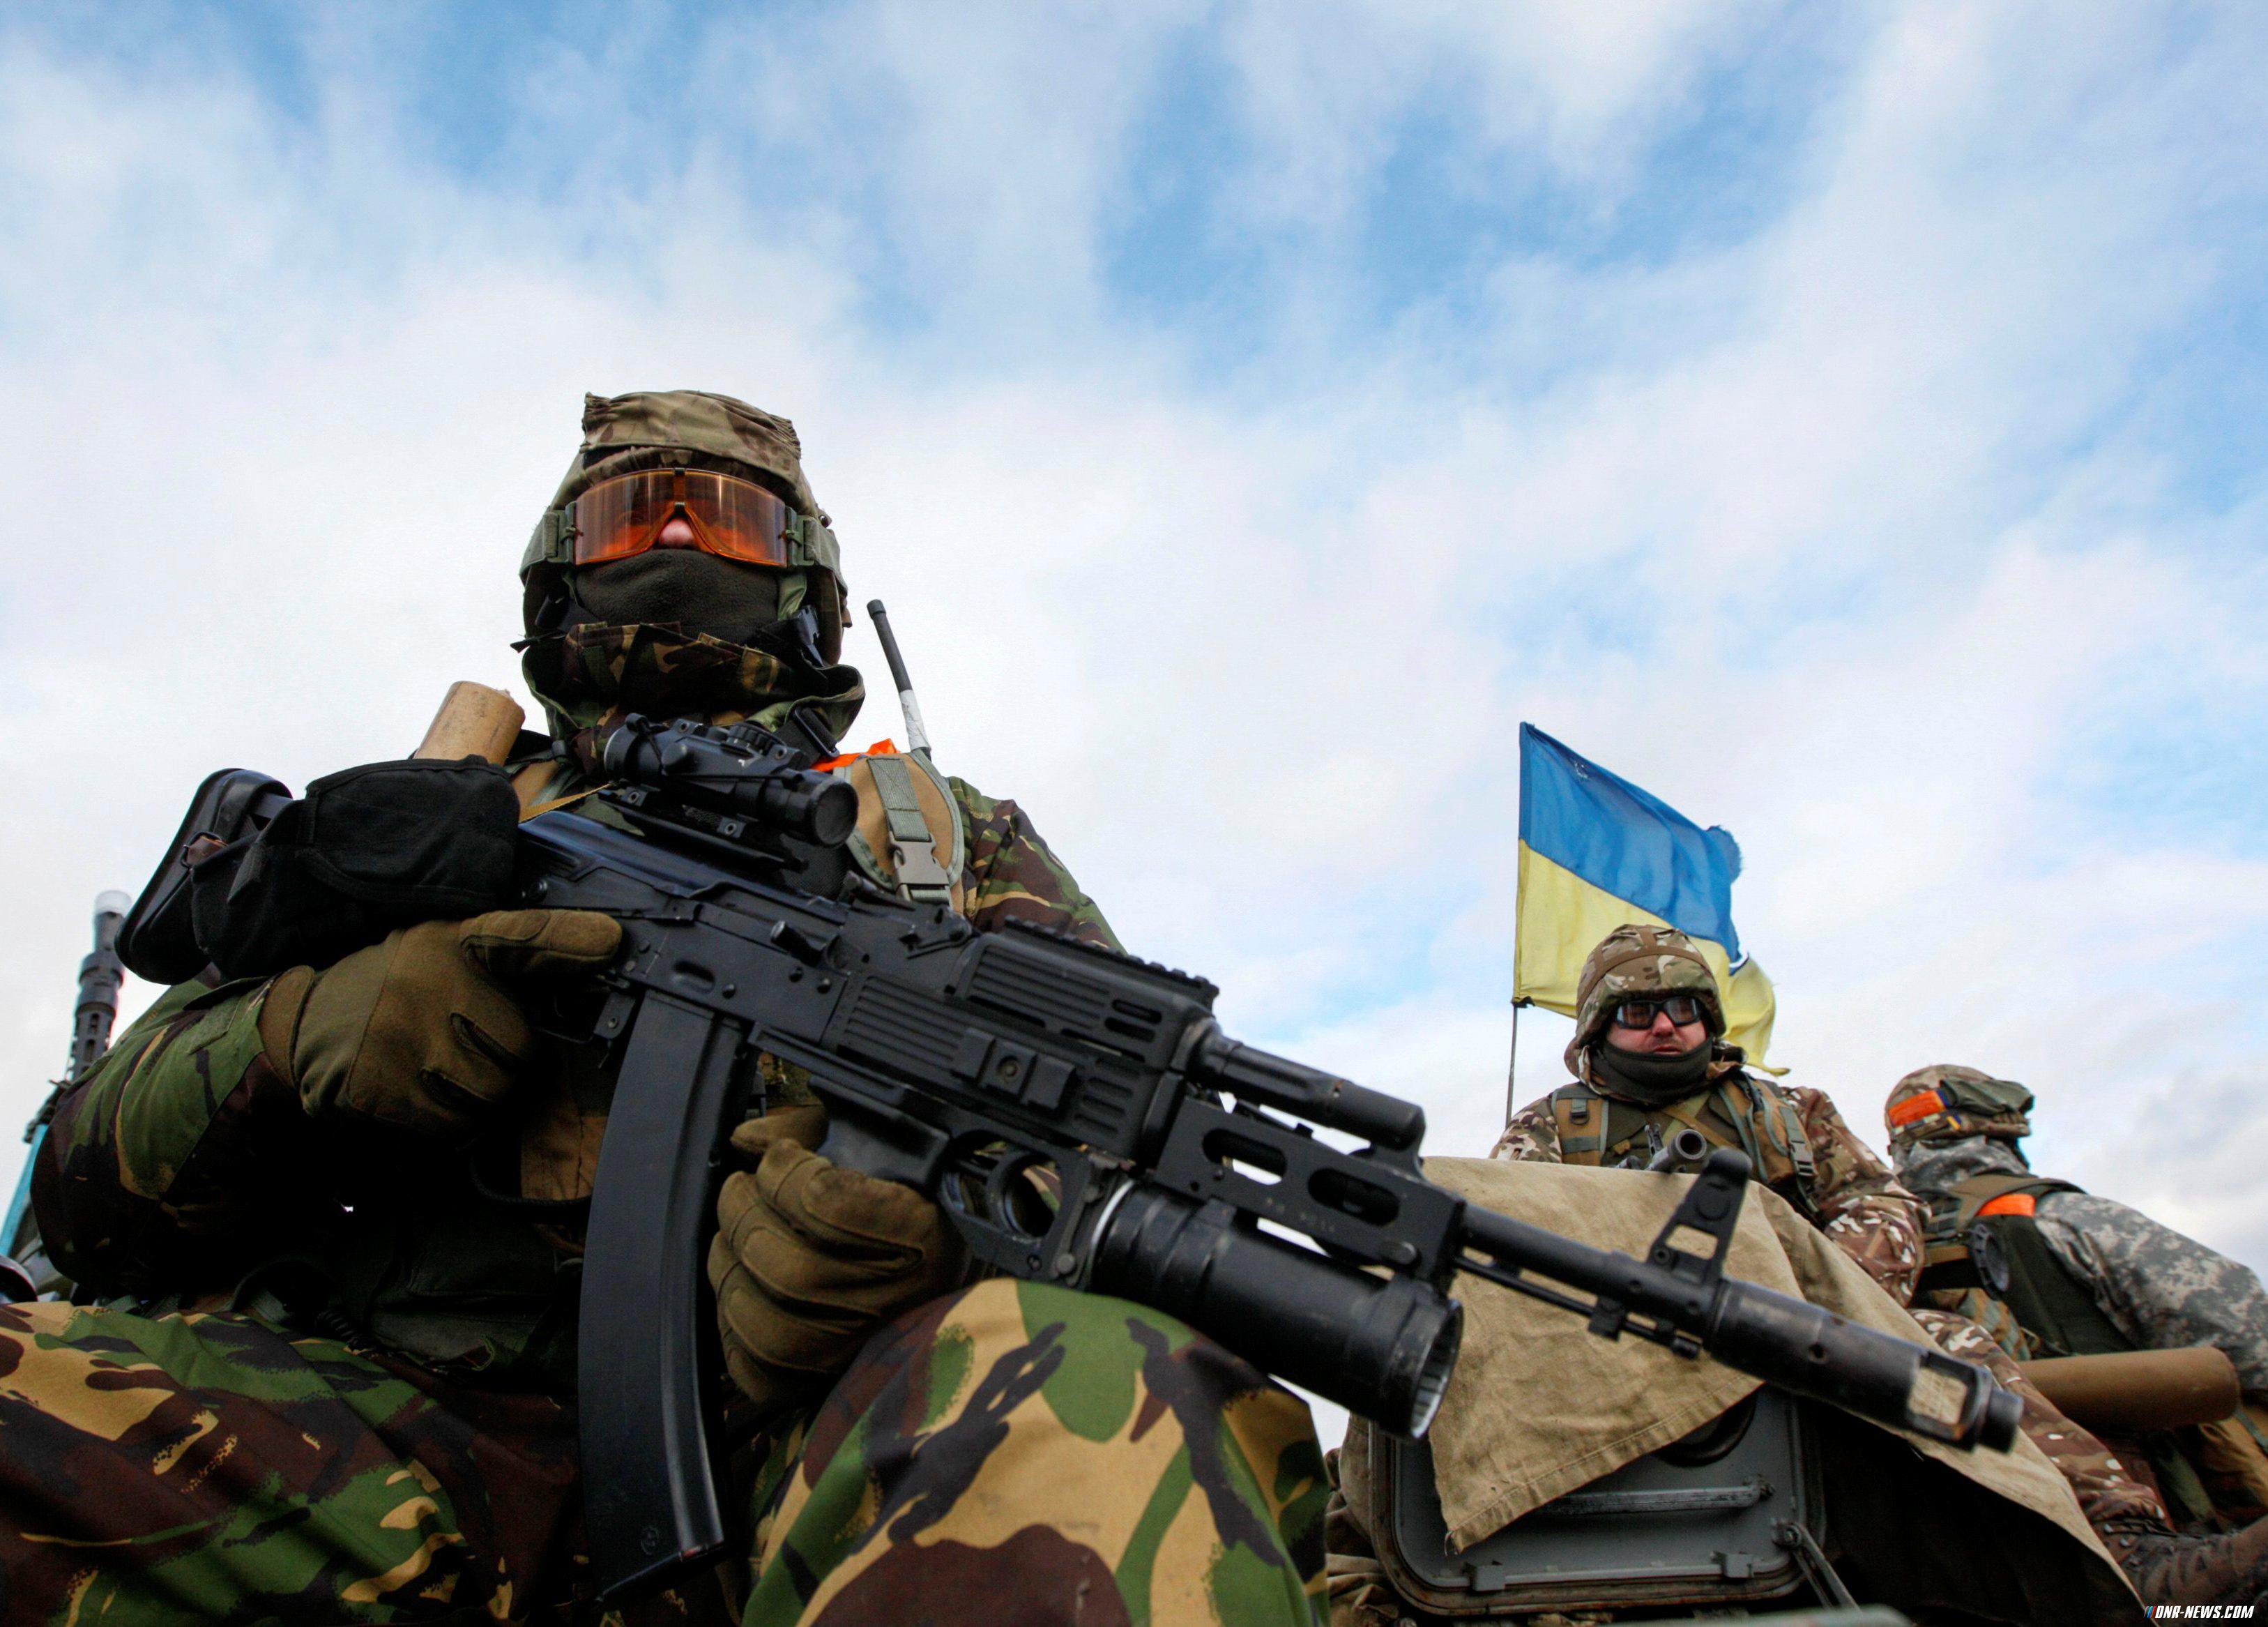 ЛНР: Армия Украины несет тяжелые потери под Калиновкой